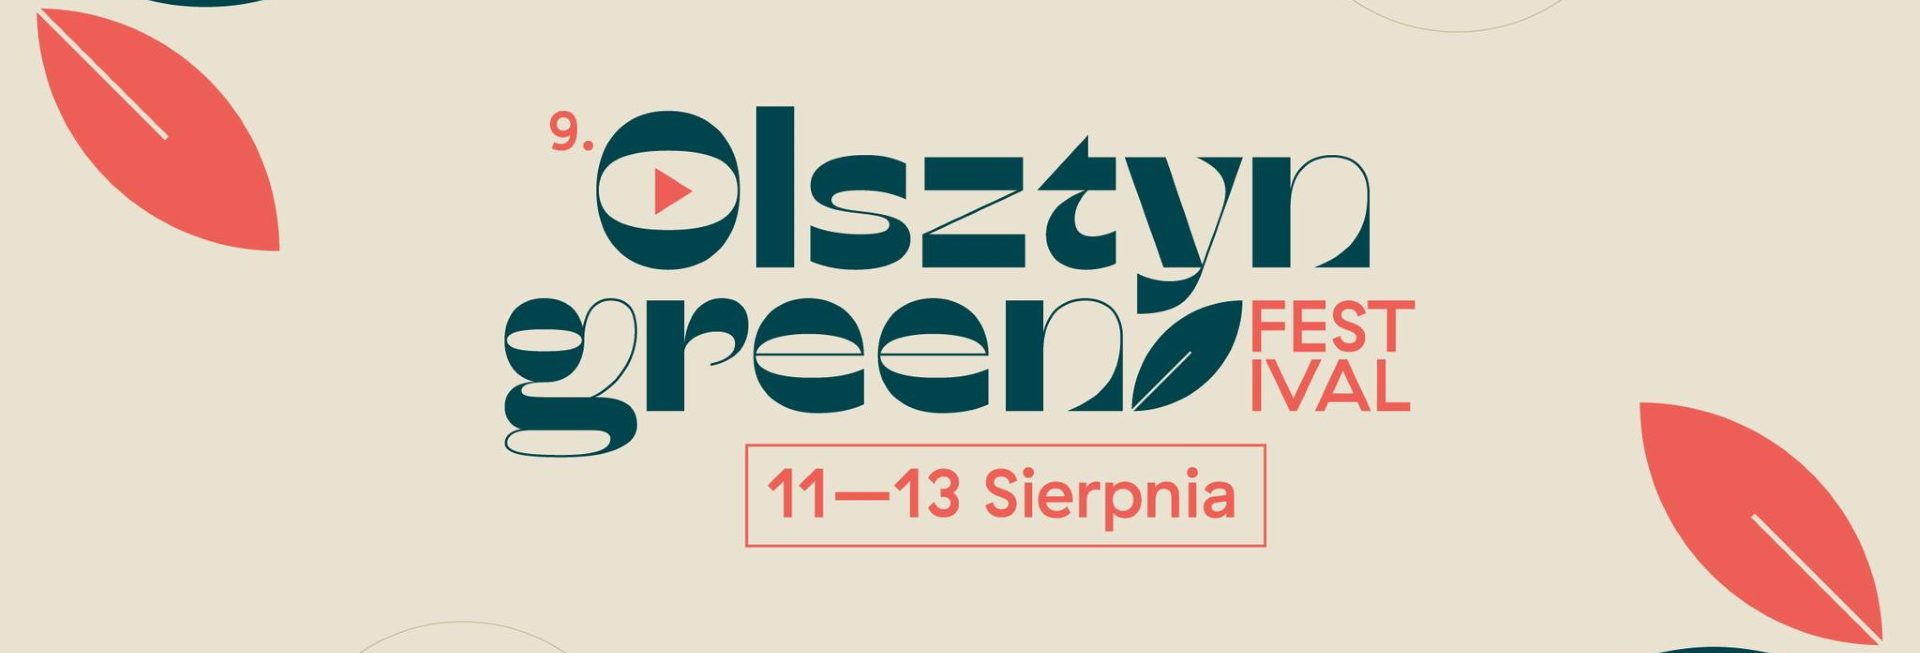 Plakat zapraszający do Olsztyna na kolejną edycję Olsztyńskiego Green Festivalu Olsztyn 2023.